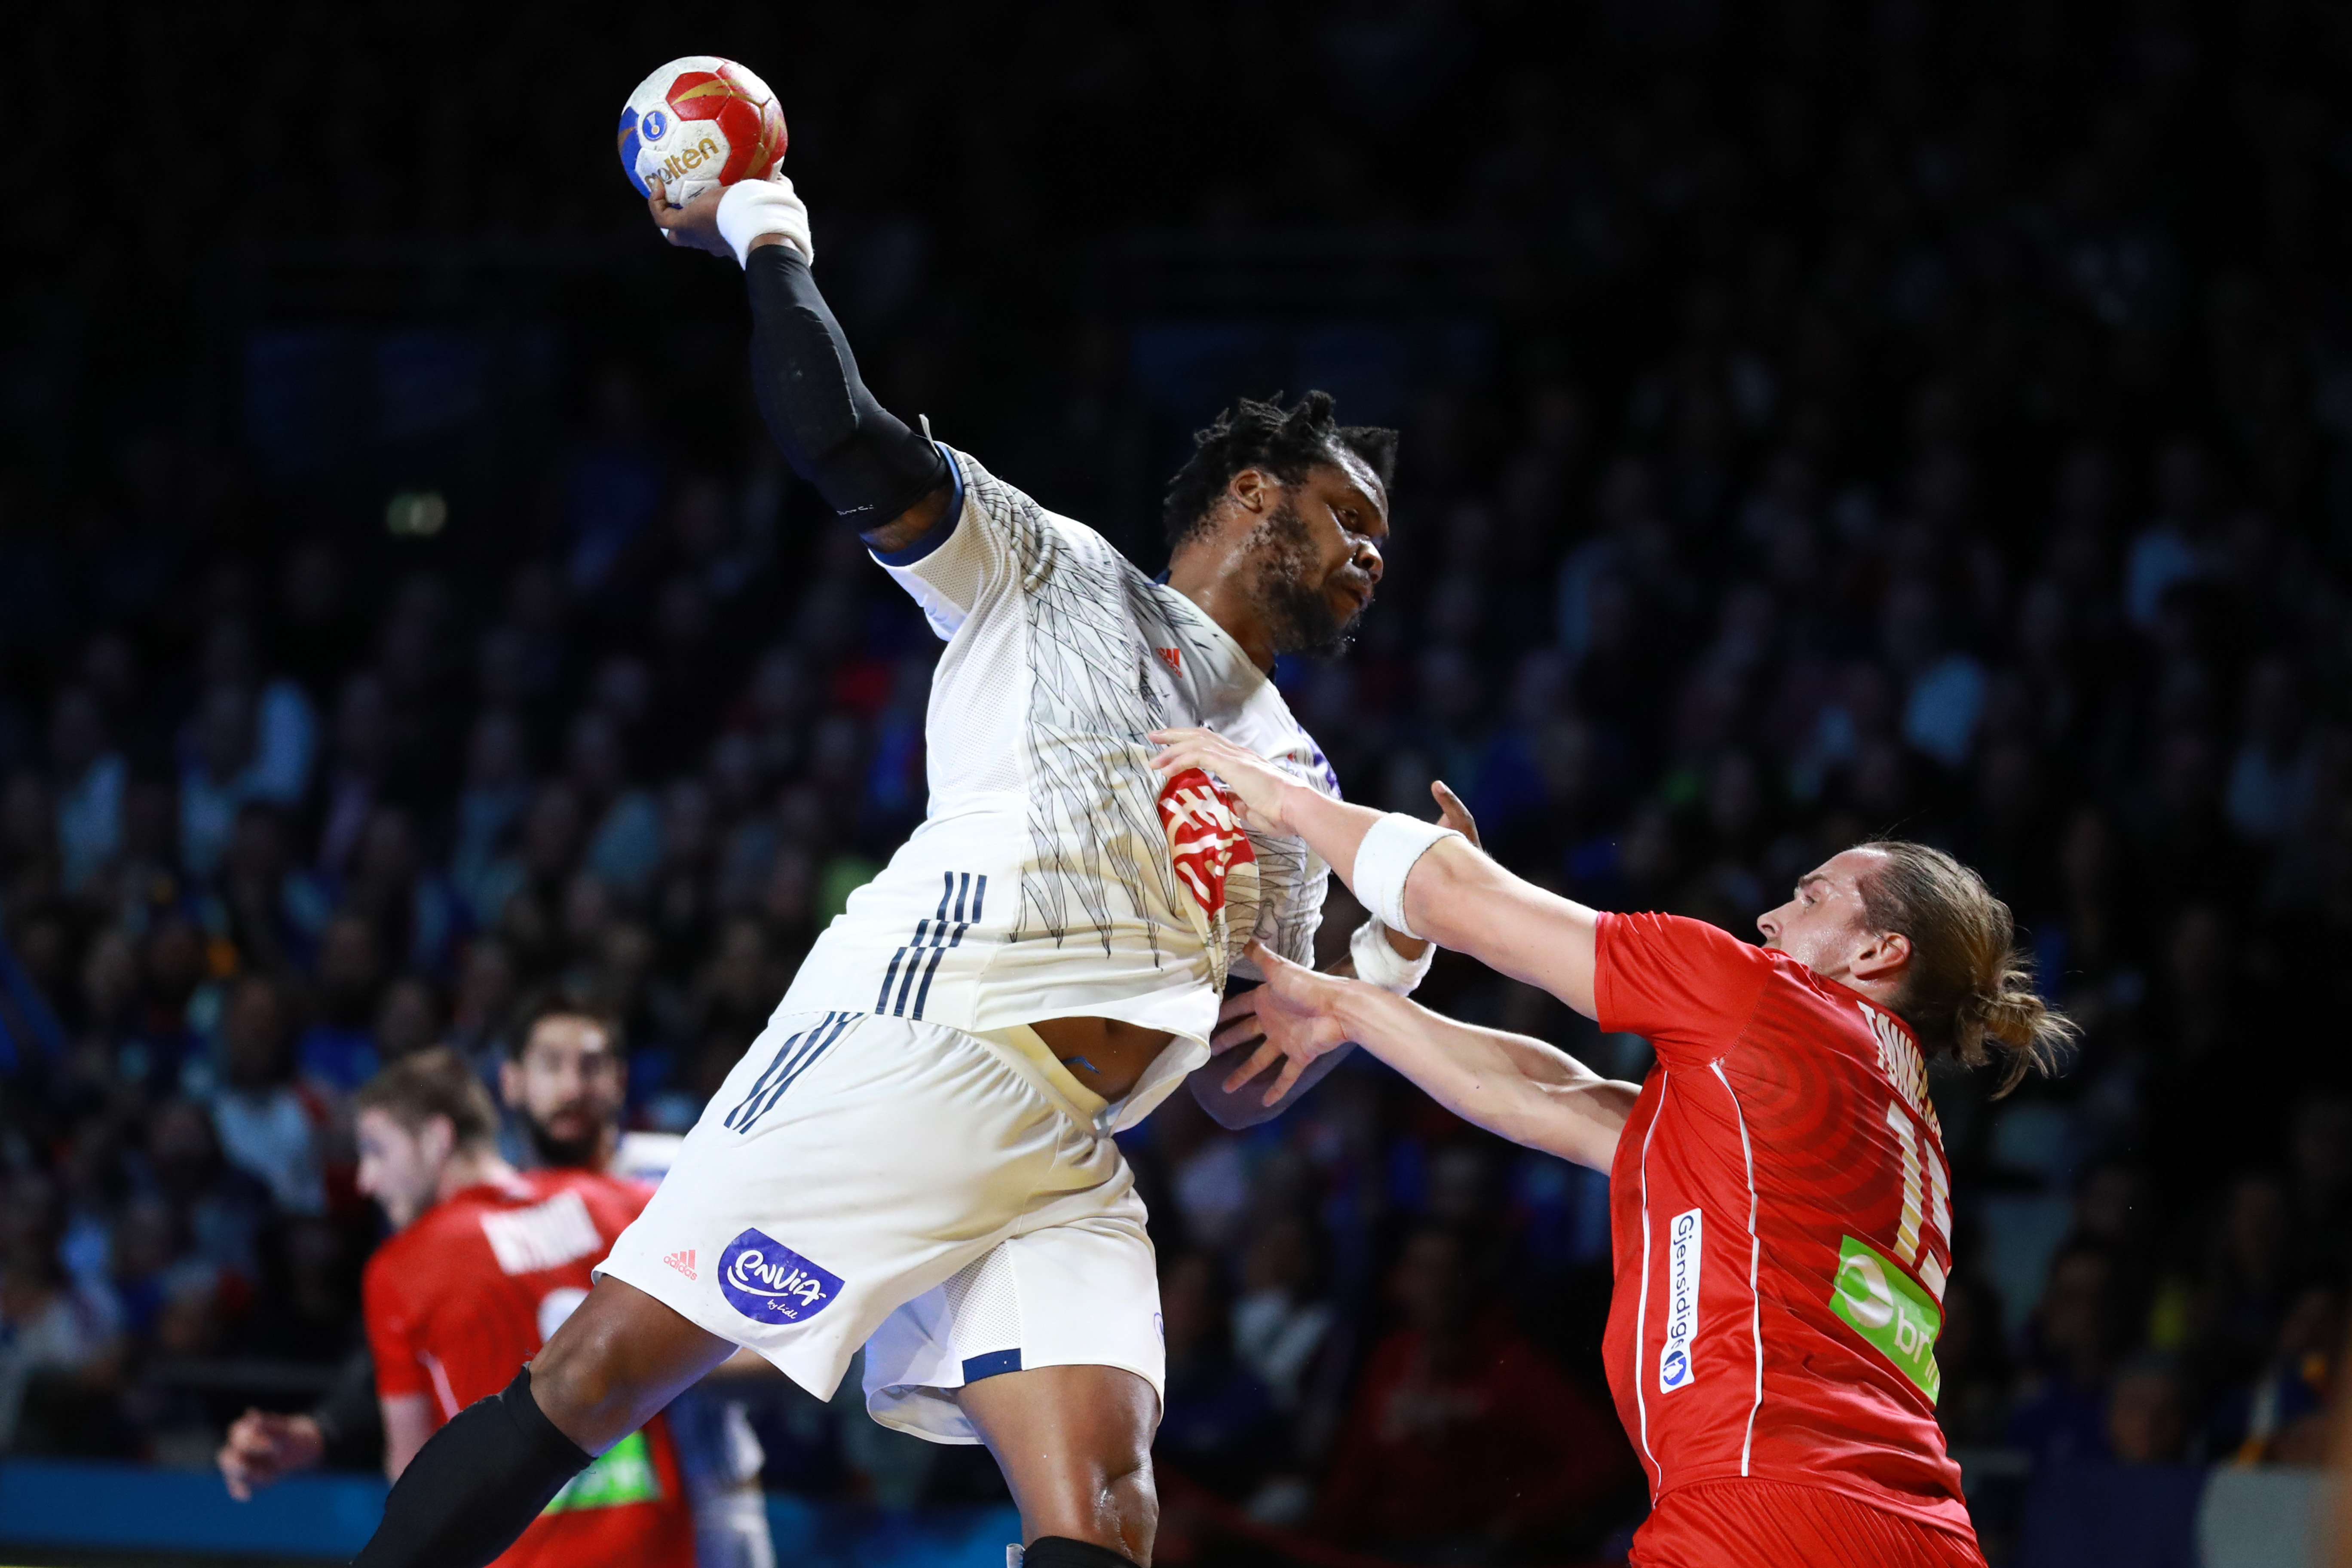 Mondial de Handball: Les Experts s&rsquo;imposent face à la Norvège